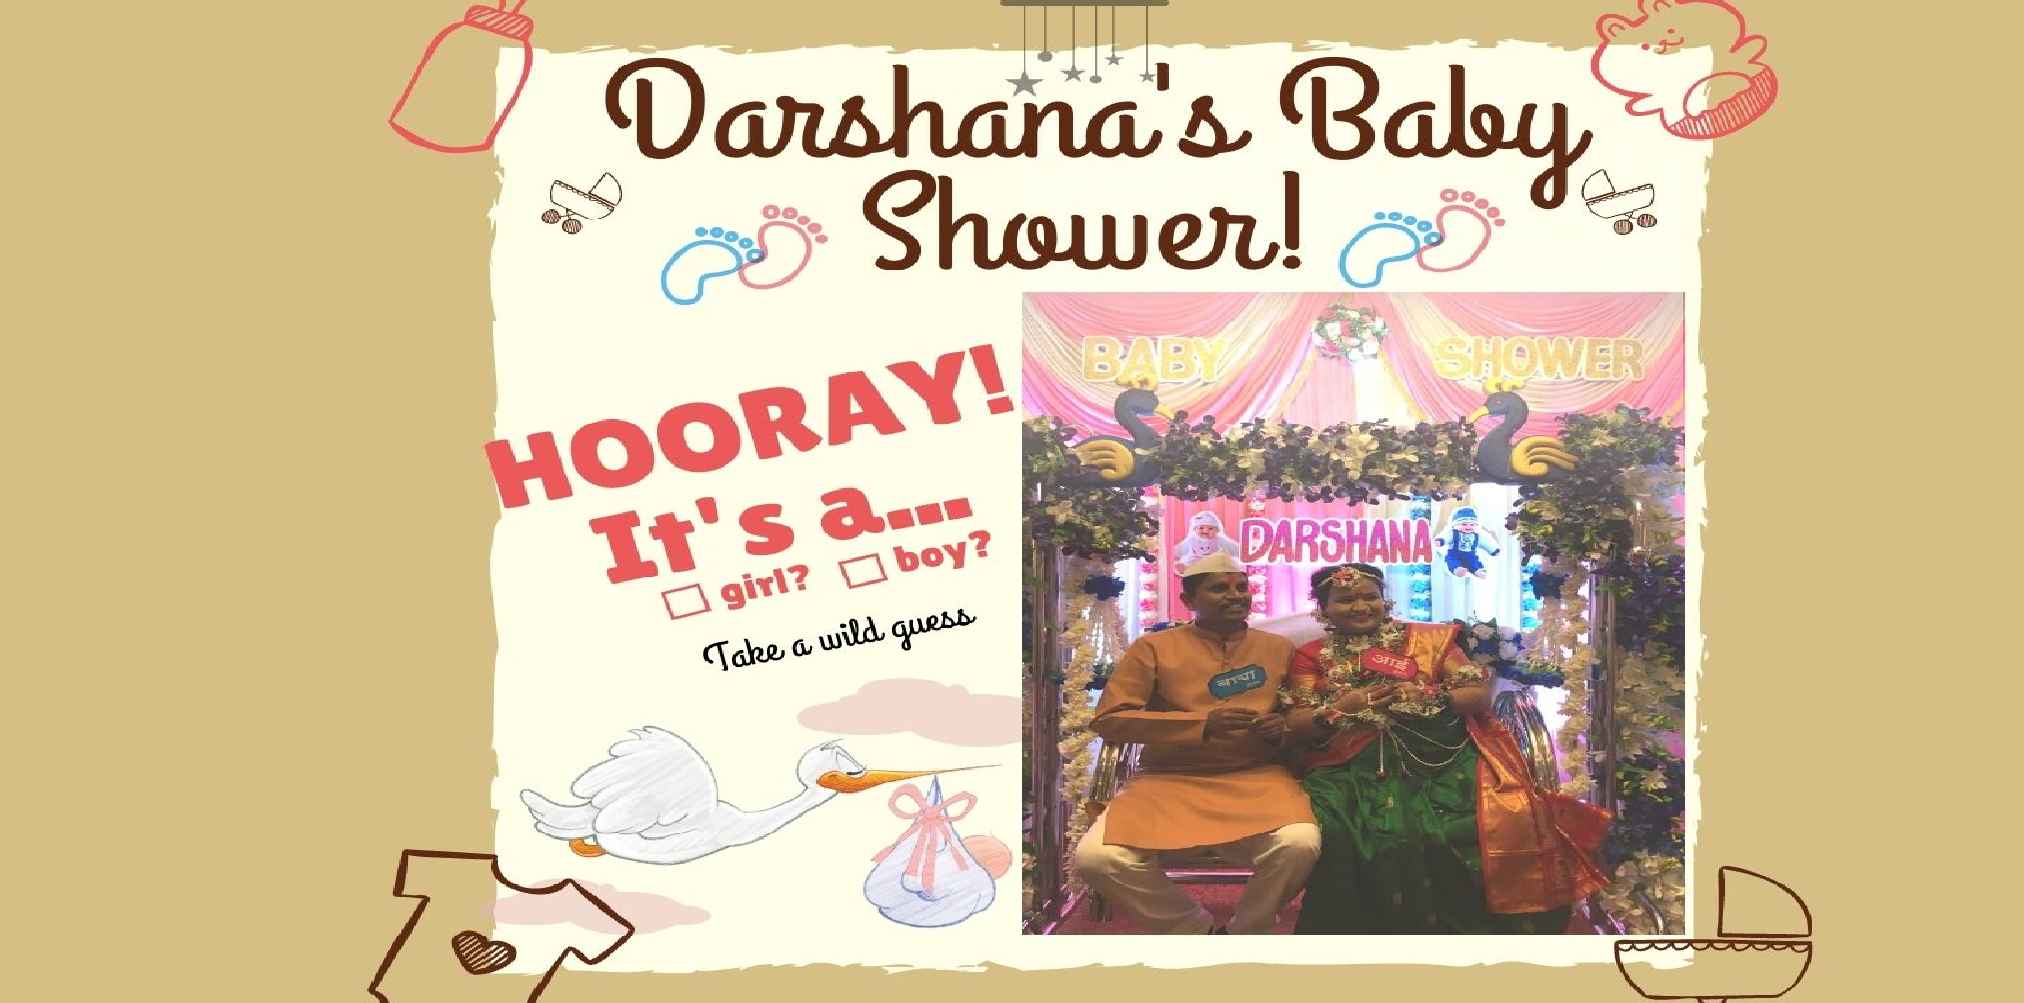 Darshana's Baby Shower